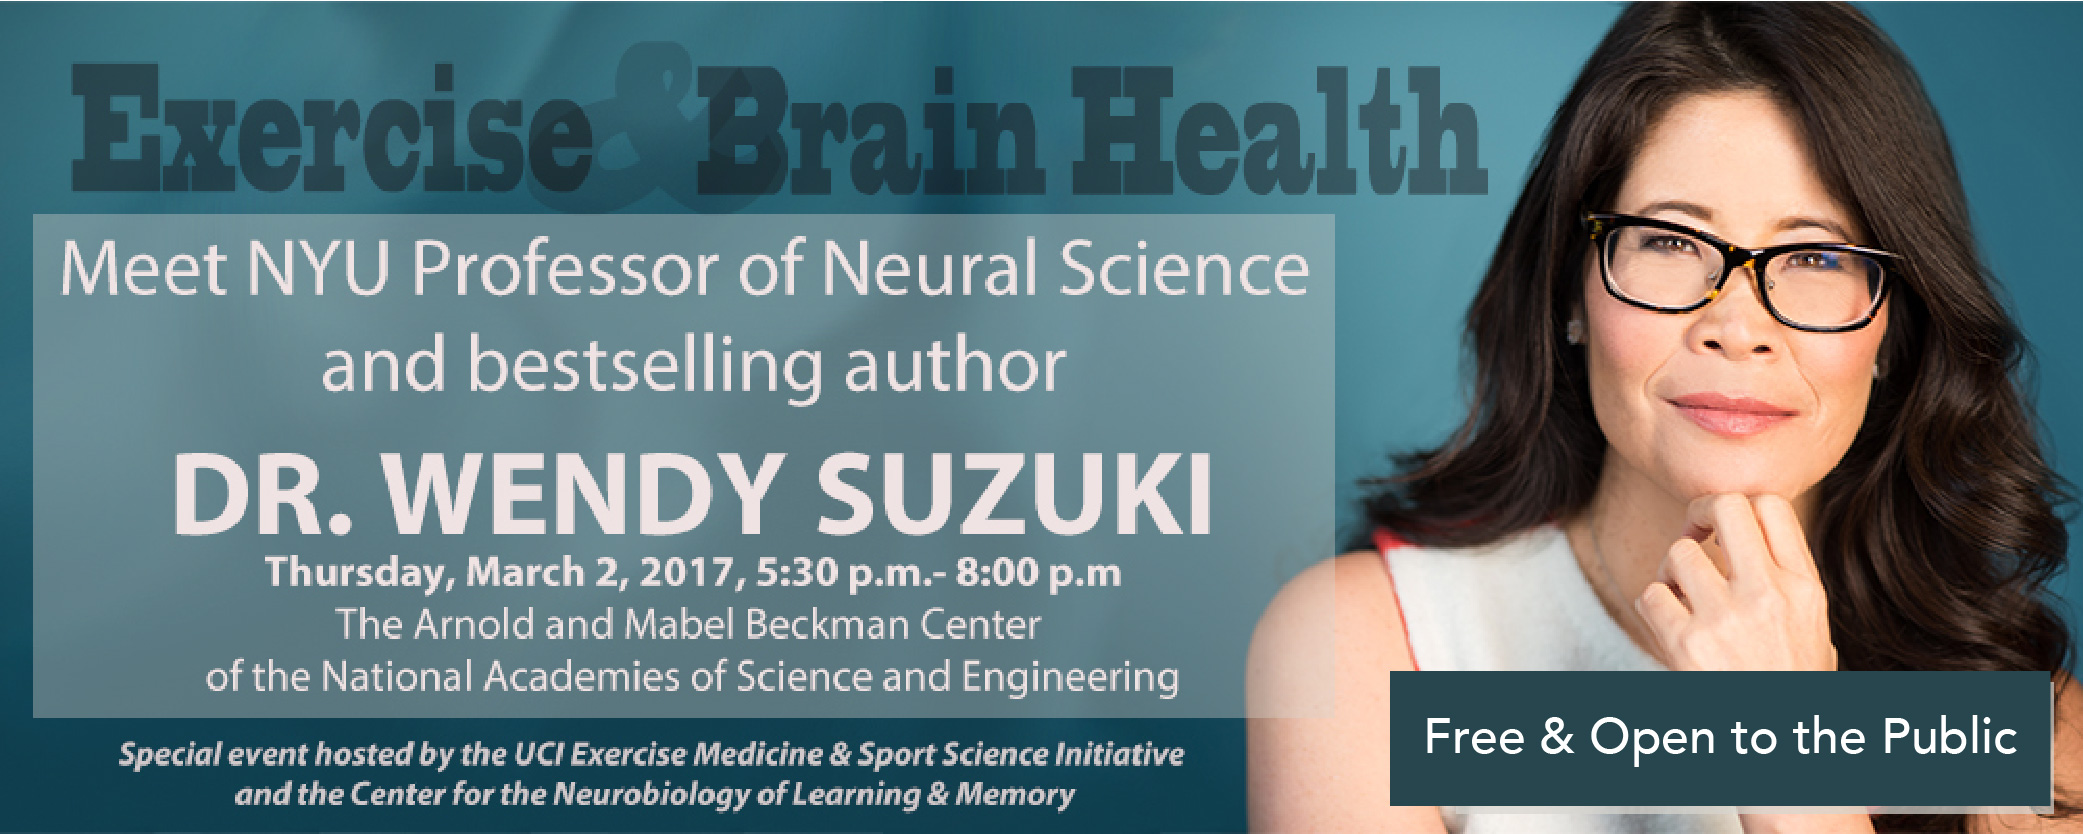 Wendy Suzuki Exercise & Brain Health Lecture